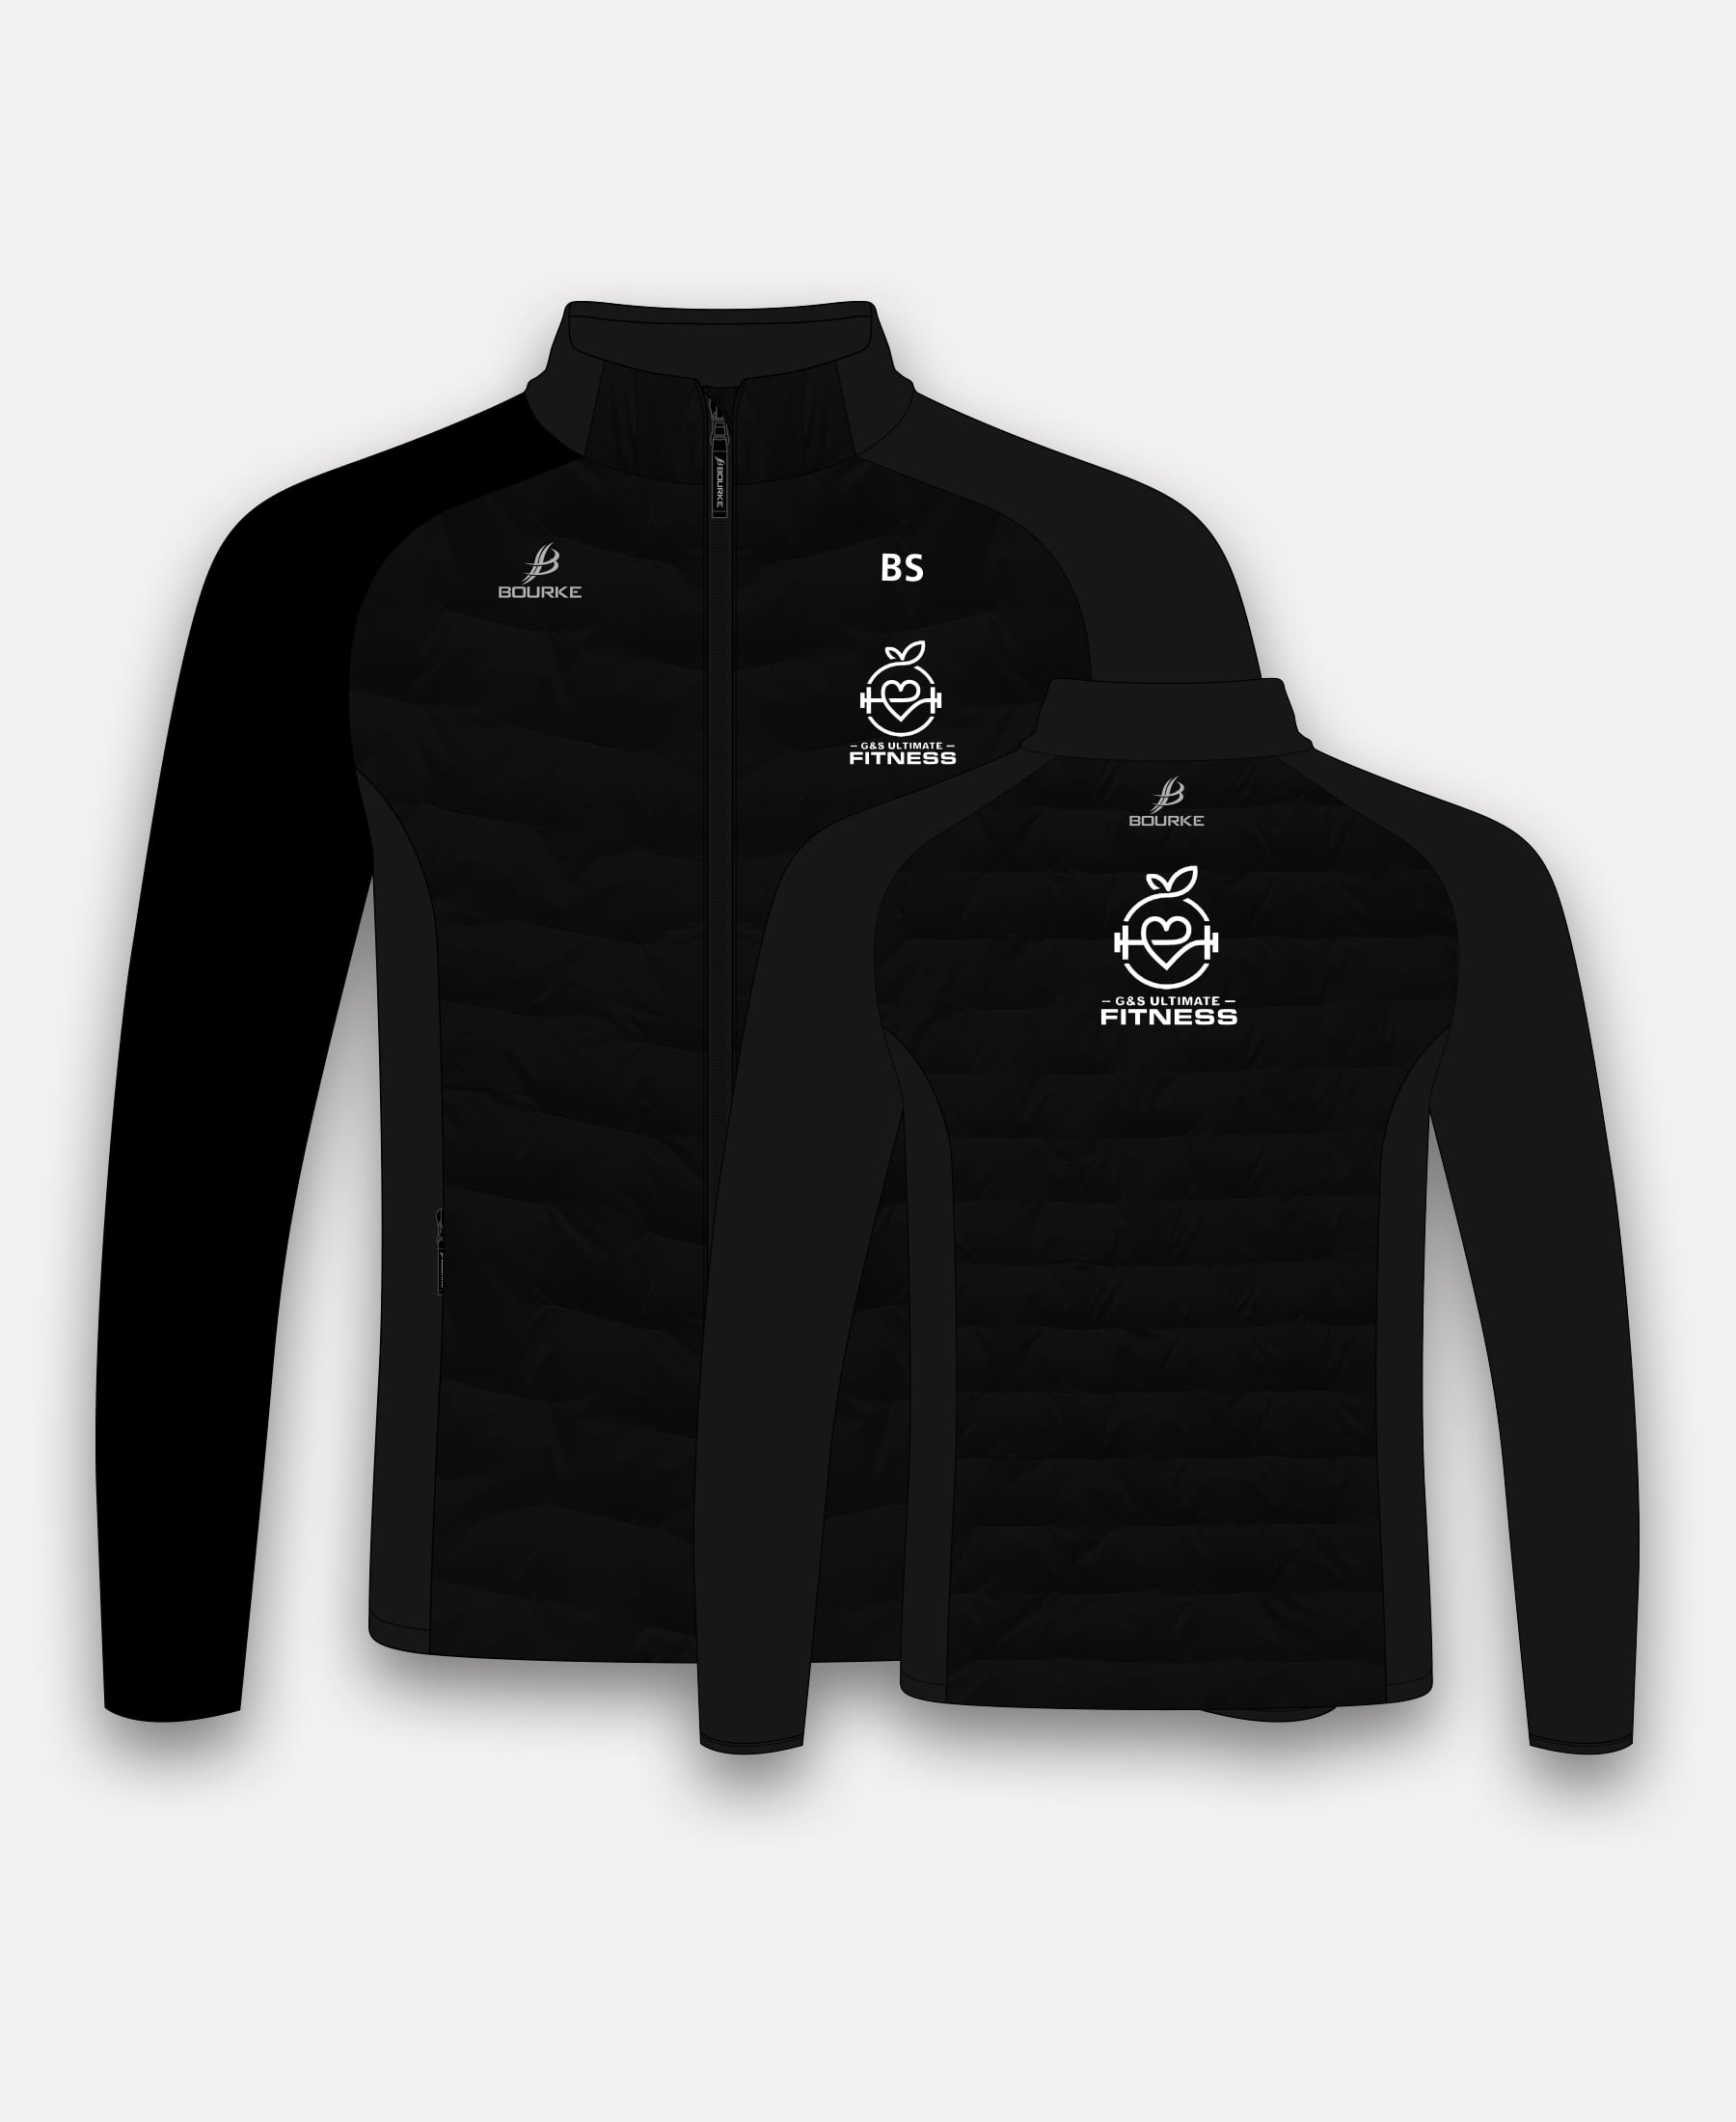 G&S Ultimate Fitness Croga Hybrid Jacket (Black)